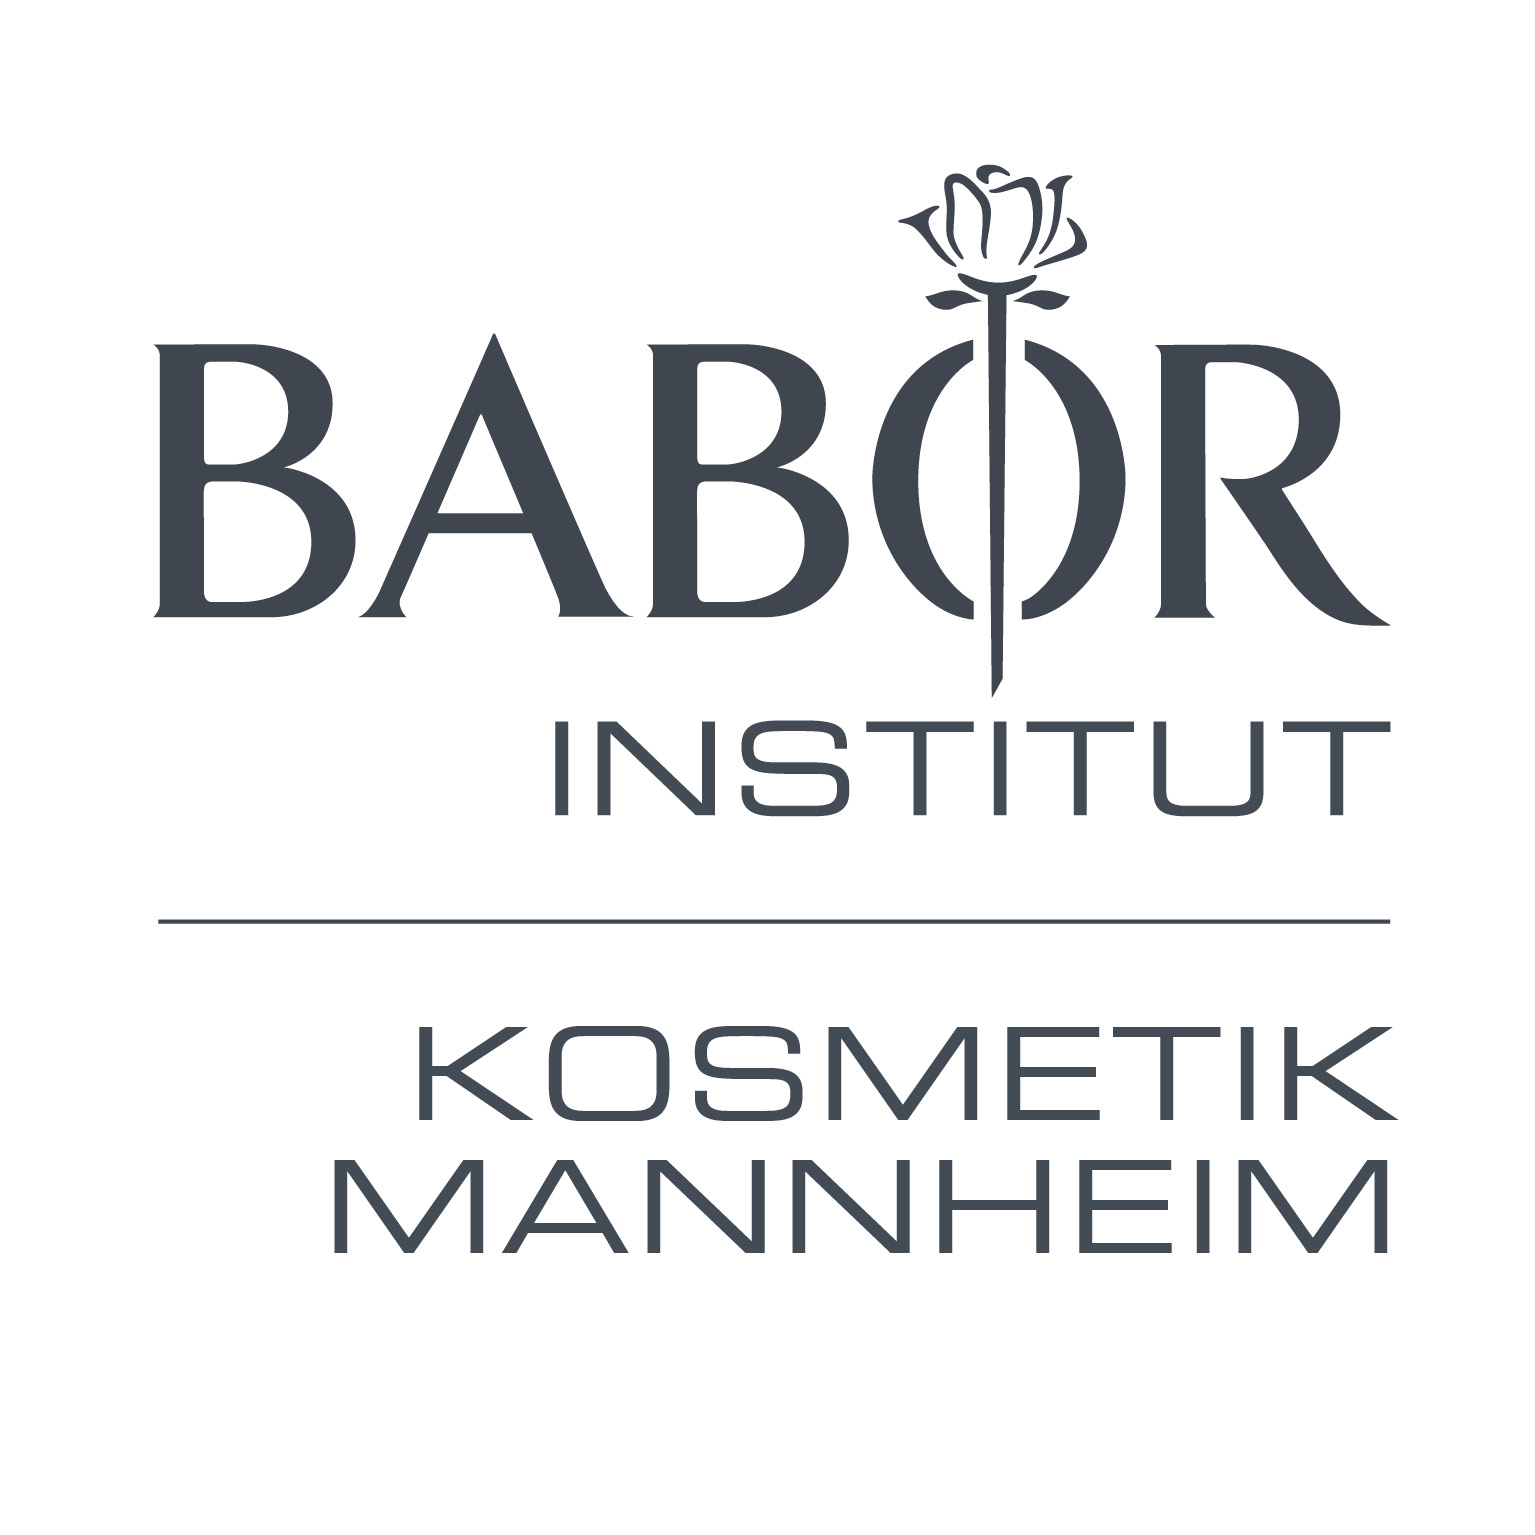 BABOR Institut Kosmetik Mannheim